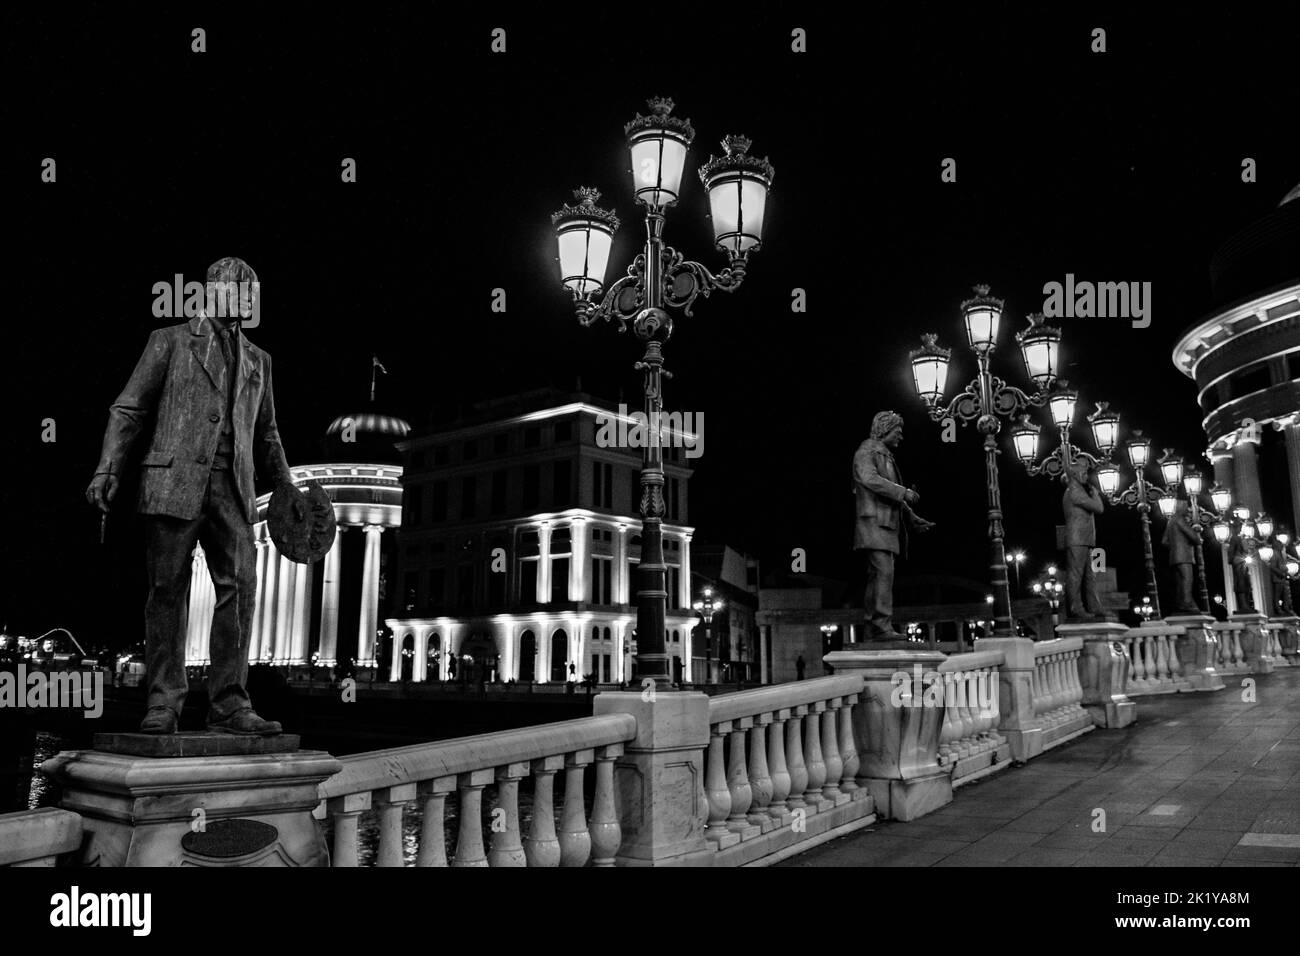 Statuen, die die Brücke der Kunst schmücken, über den Vardar-Fluss, Skopje, Nordmakedonien. Nachts mit Lampenpfosten, die die Brücke erleuchten. Stockfoto